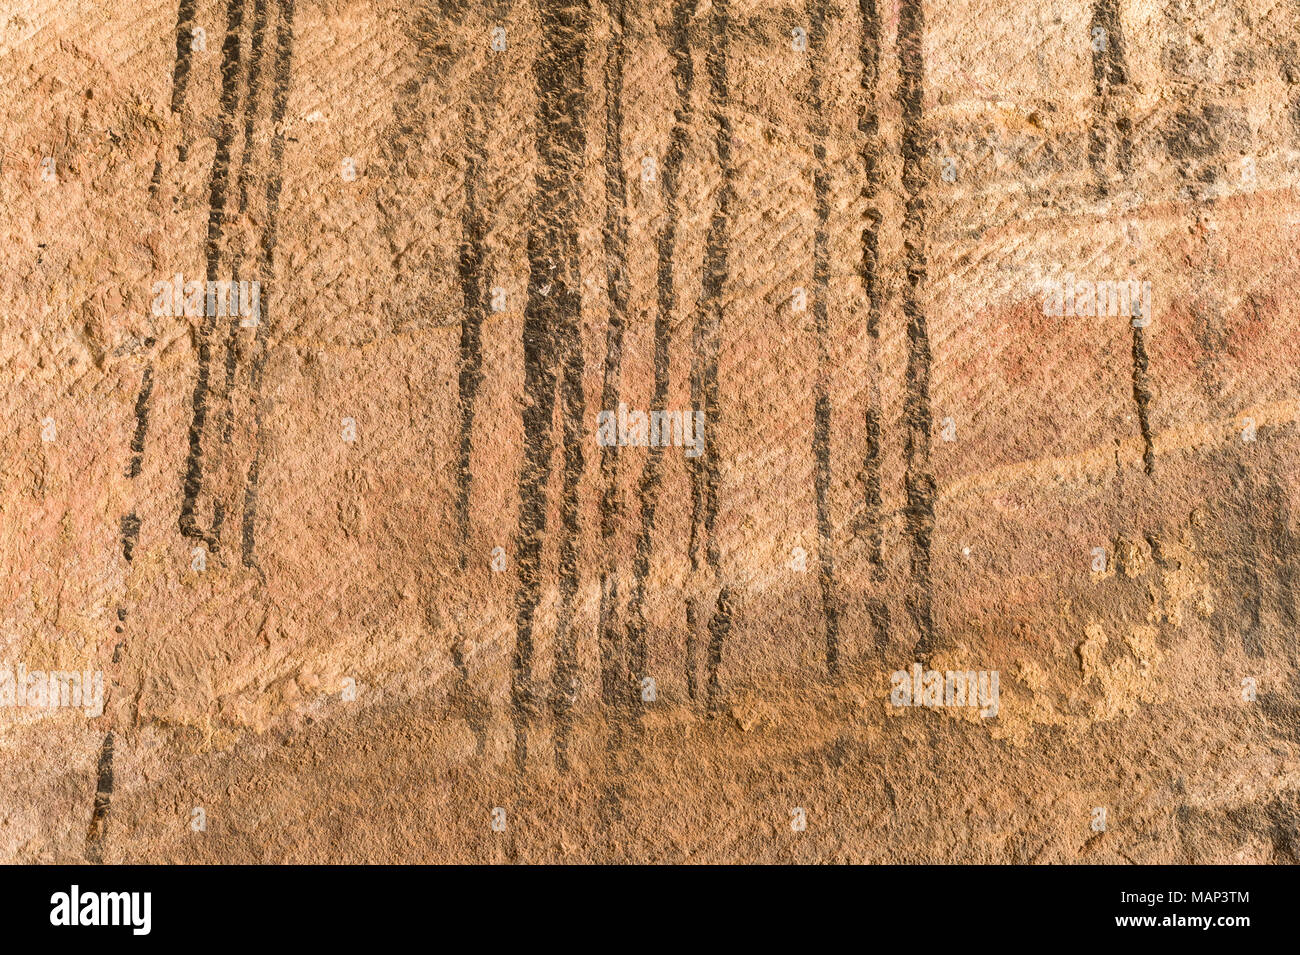 Detalle de la pared de la roca en las Tumbas Reales de Petra, Jordania. Foto de stock